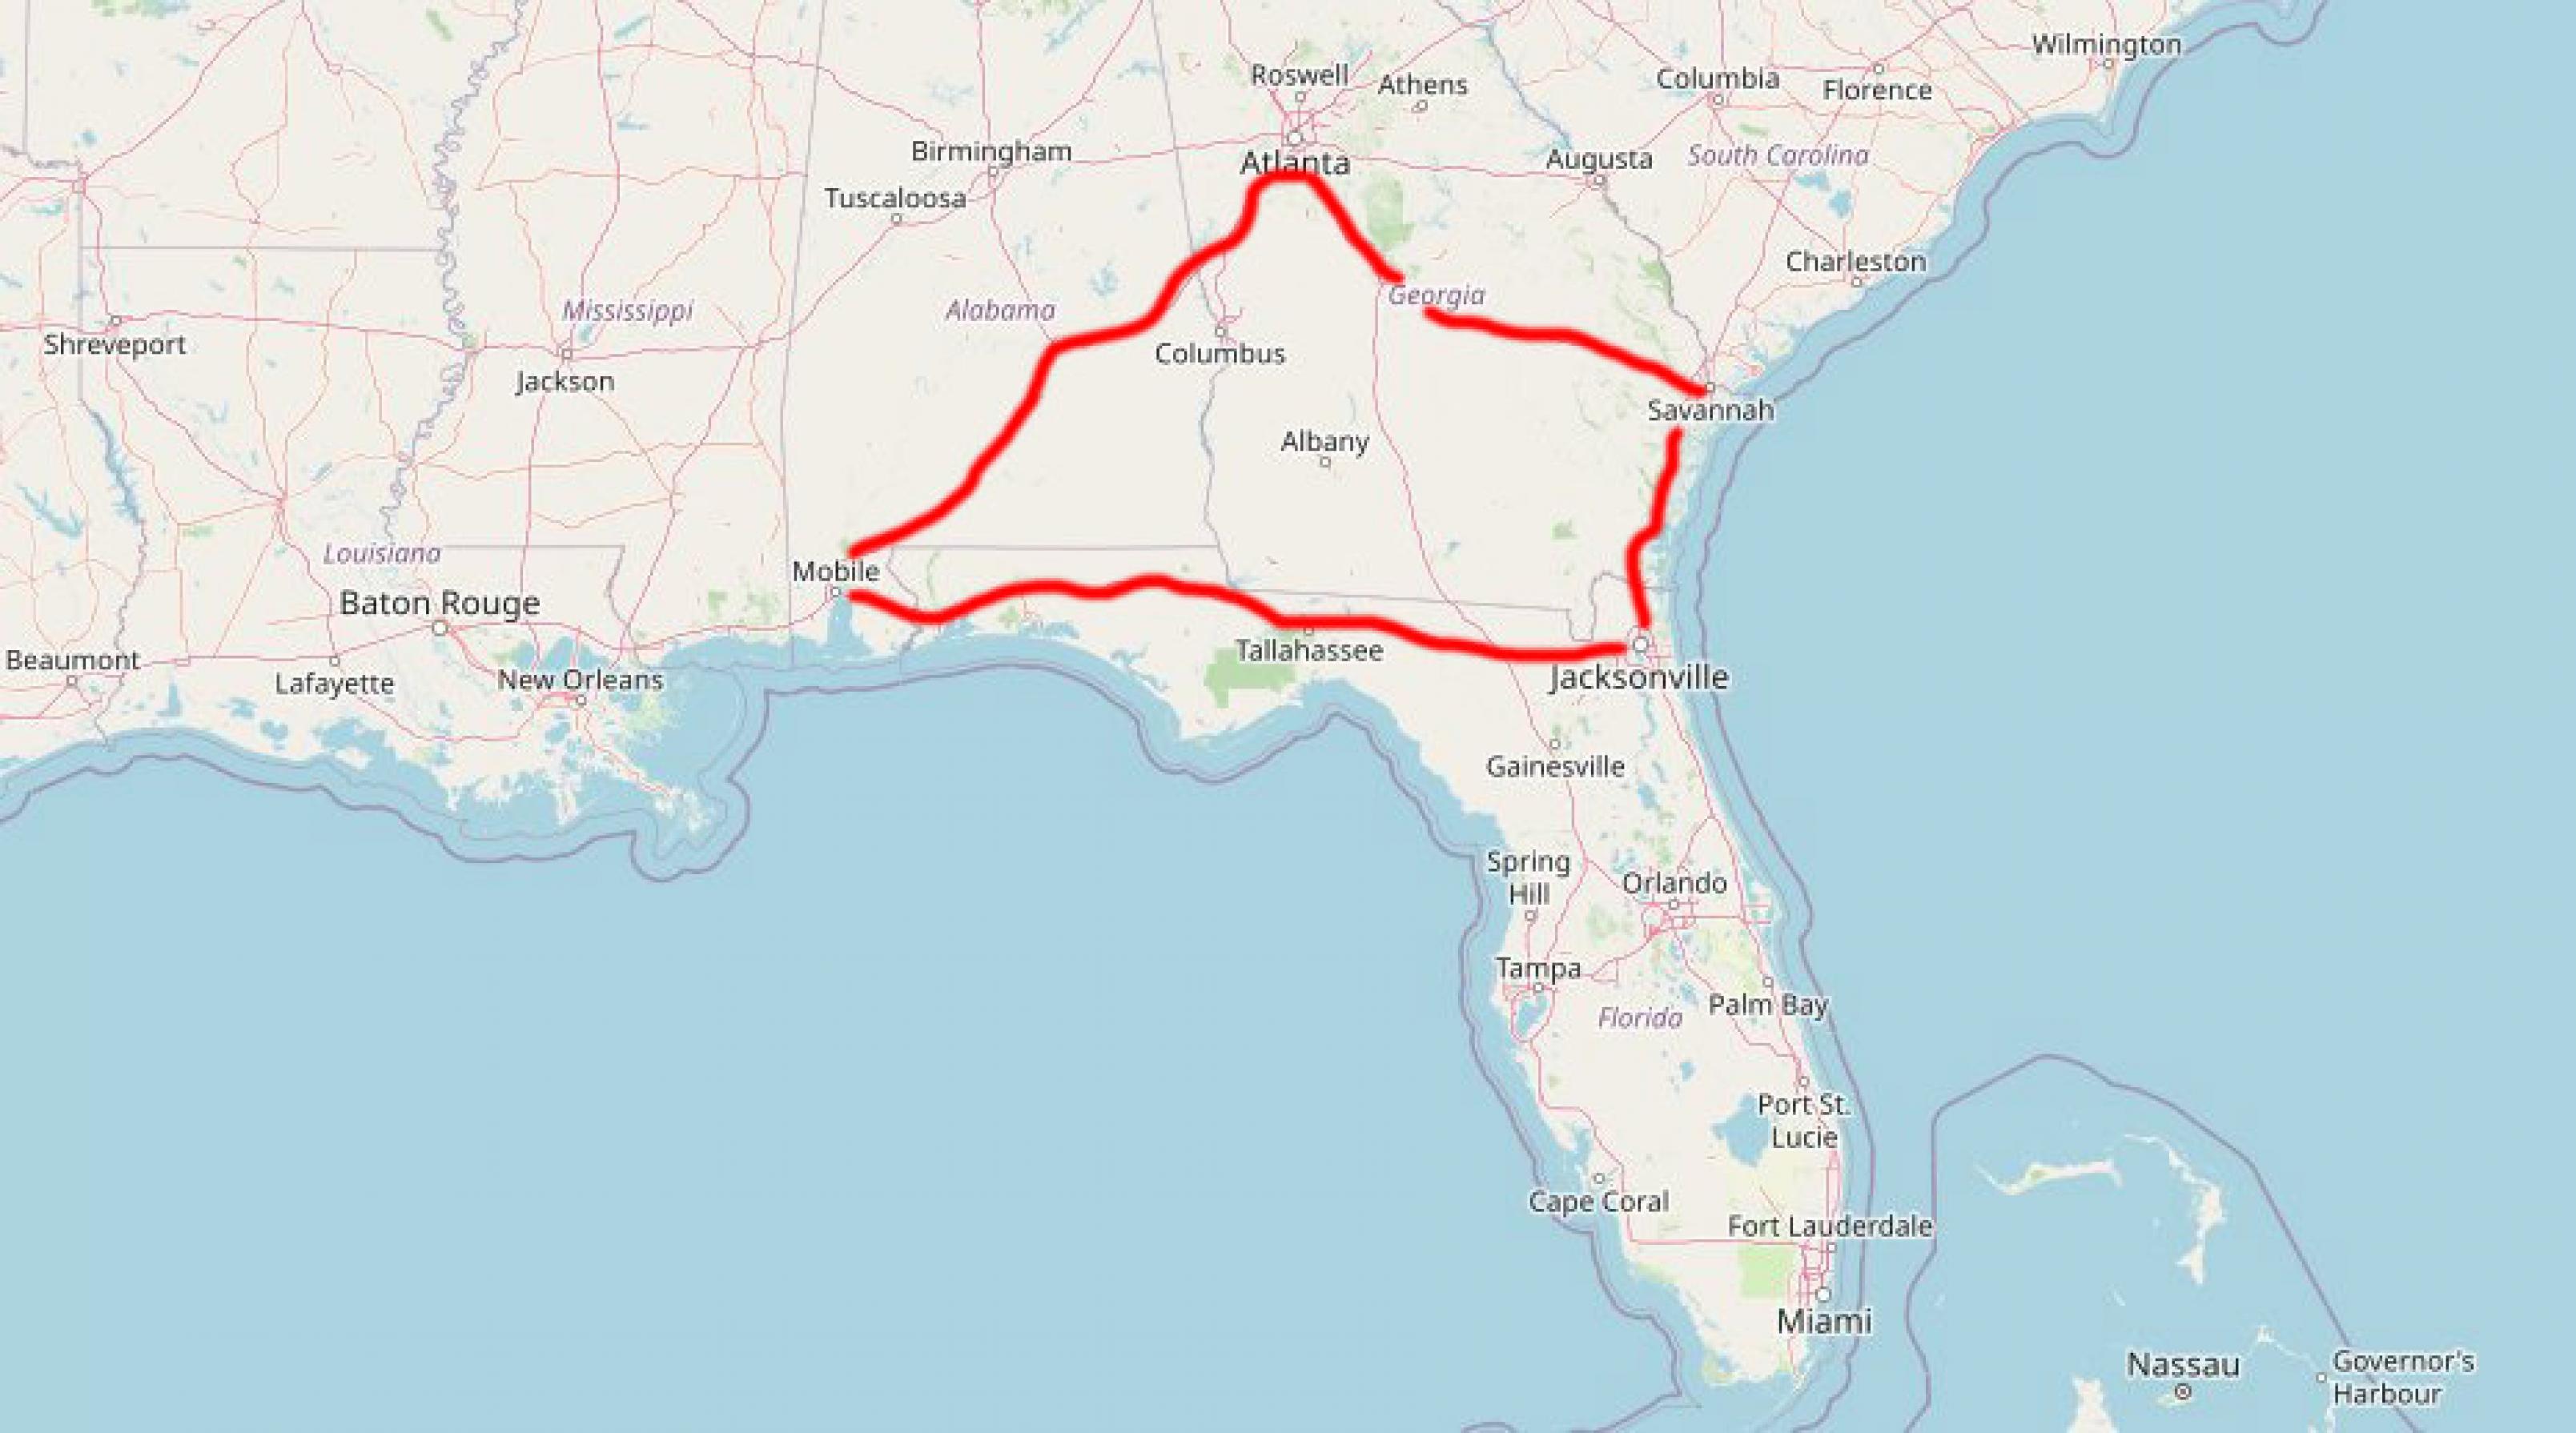 Landkarten-Ausschnitt. Die Karte zeigt den Süden der USA.